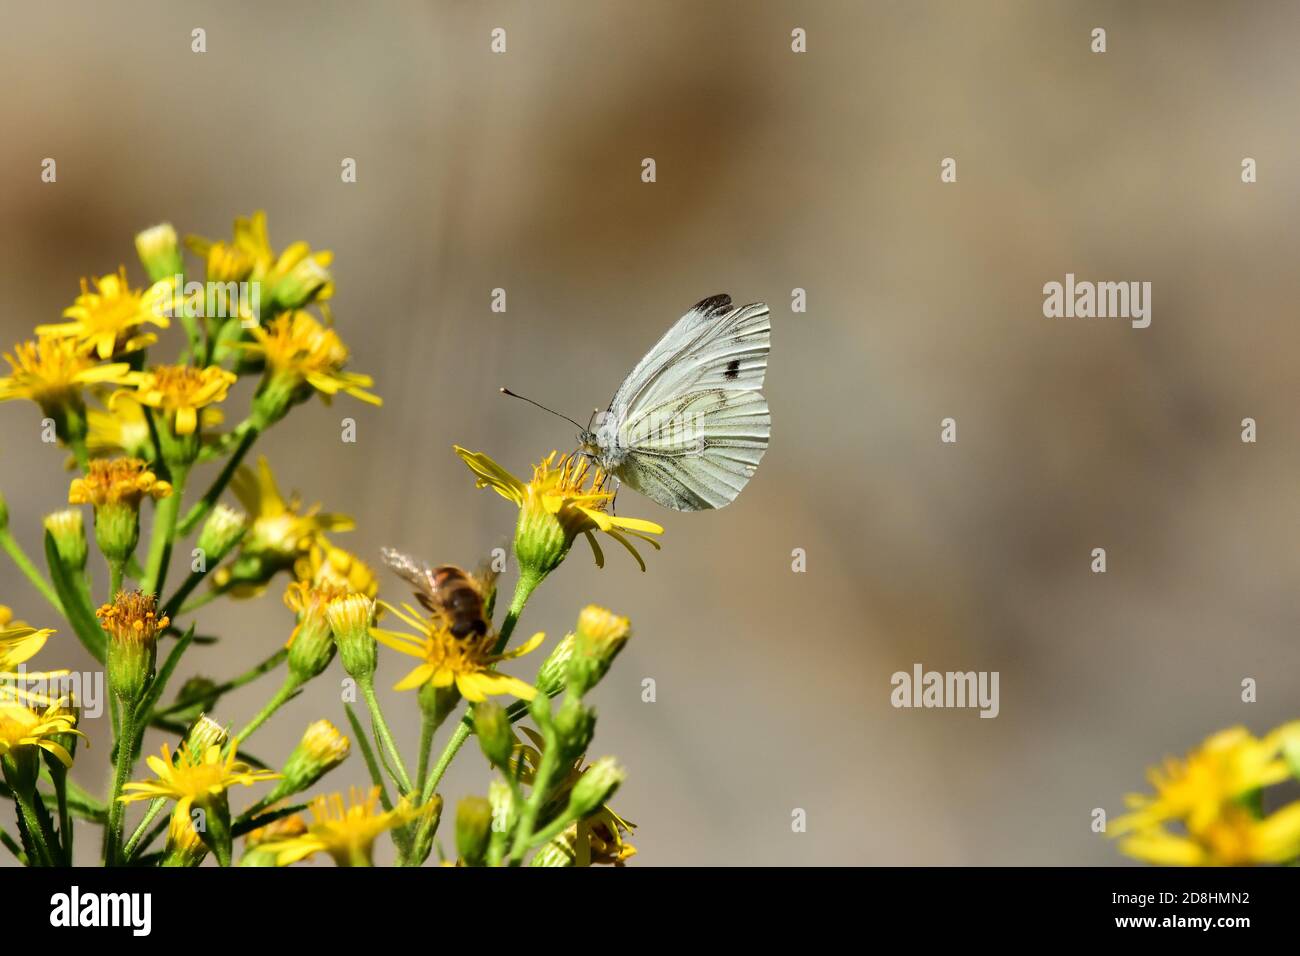 Makroaufnahme eines isolierten Exemplars von Grünadern (Pieris napi), einem Schmetterling der Familie der Pieridae, der in seinem natürlichen Ha fliegt und sich ernährt Stockfoto